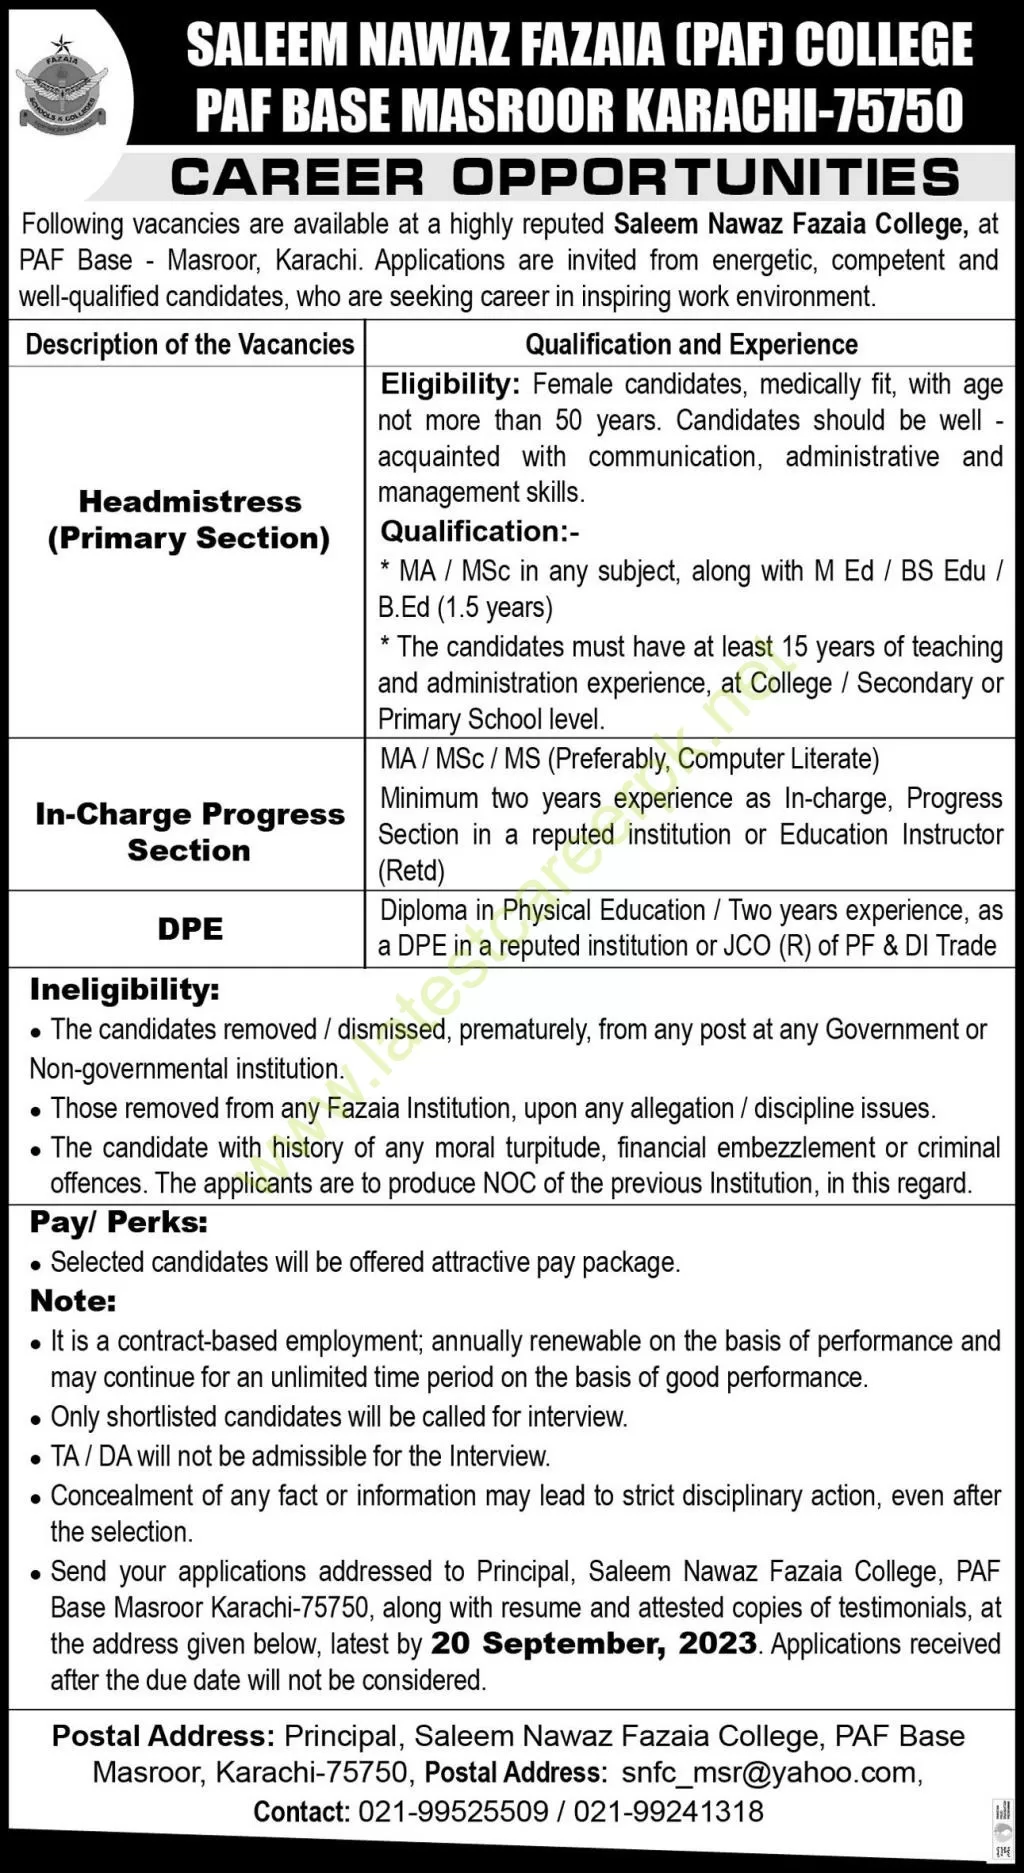 Saleem-Nawaz-Fazaia-College-Masroor-Base-Karachi-Jobs-11-Sep-2023